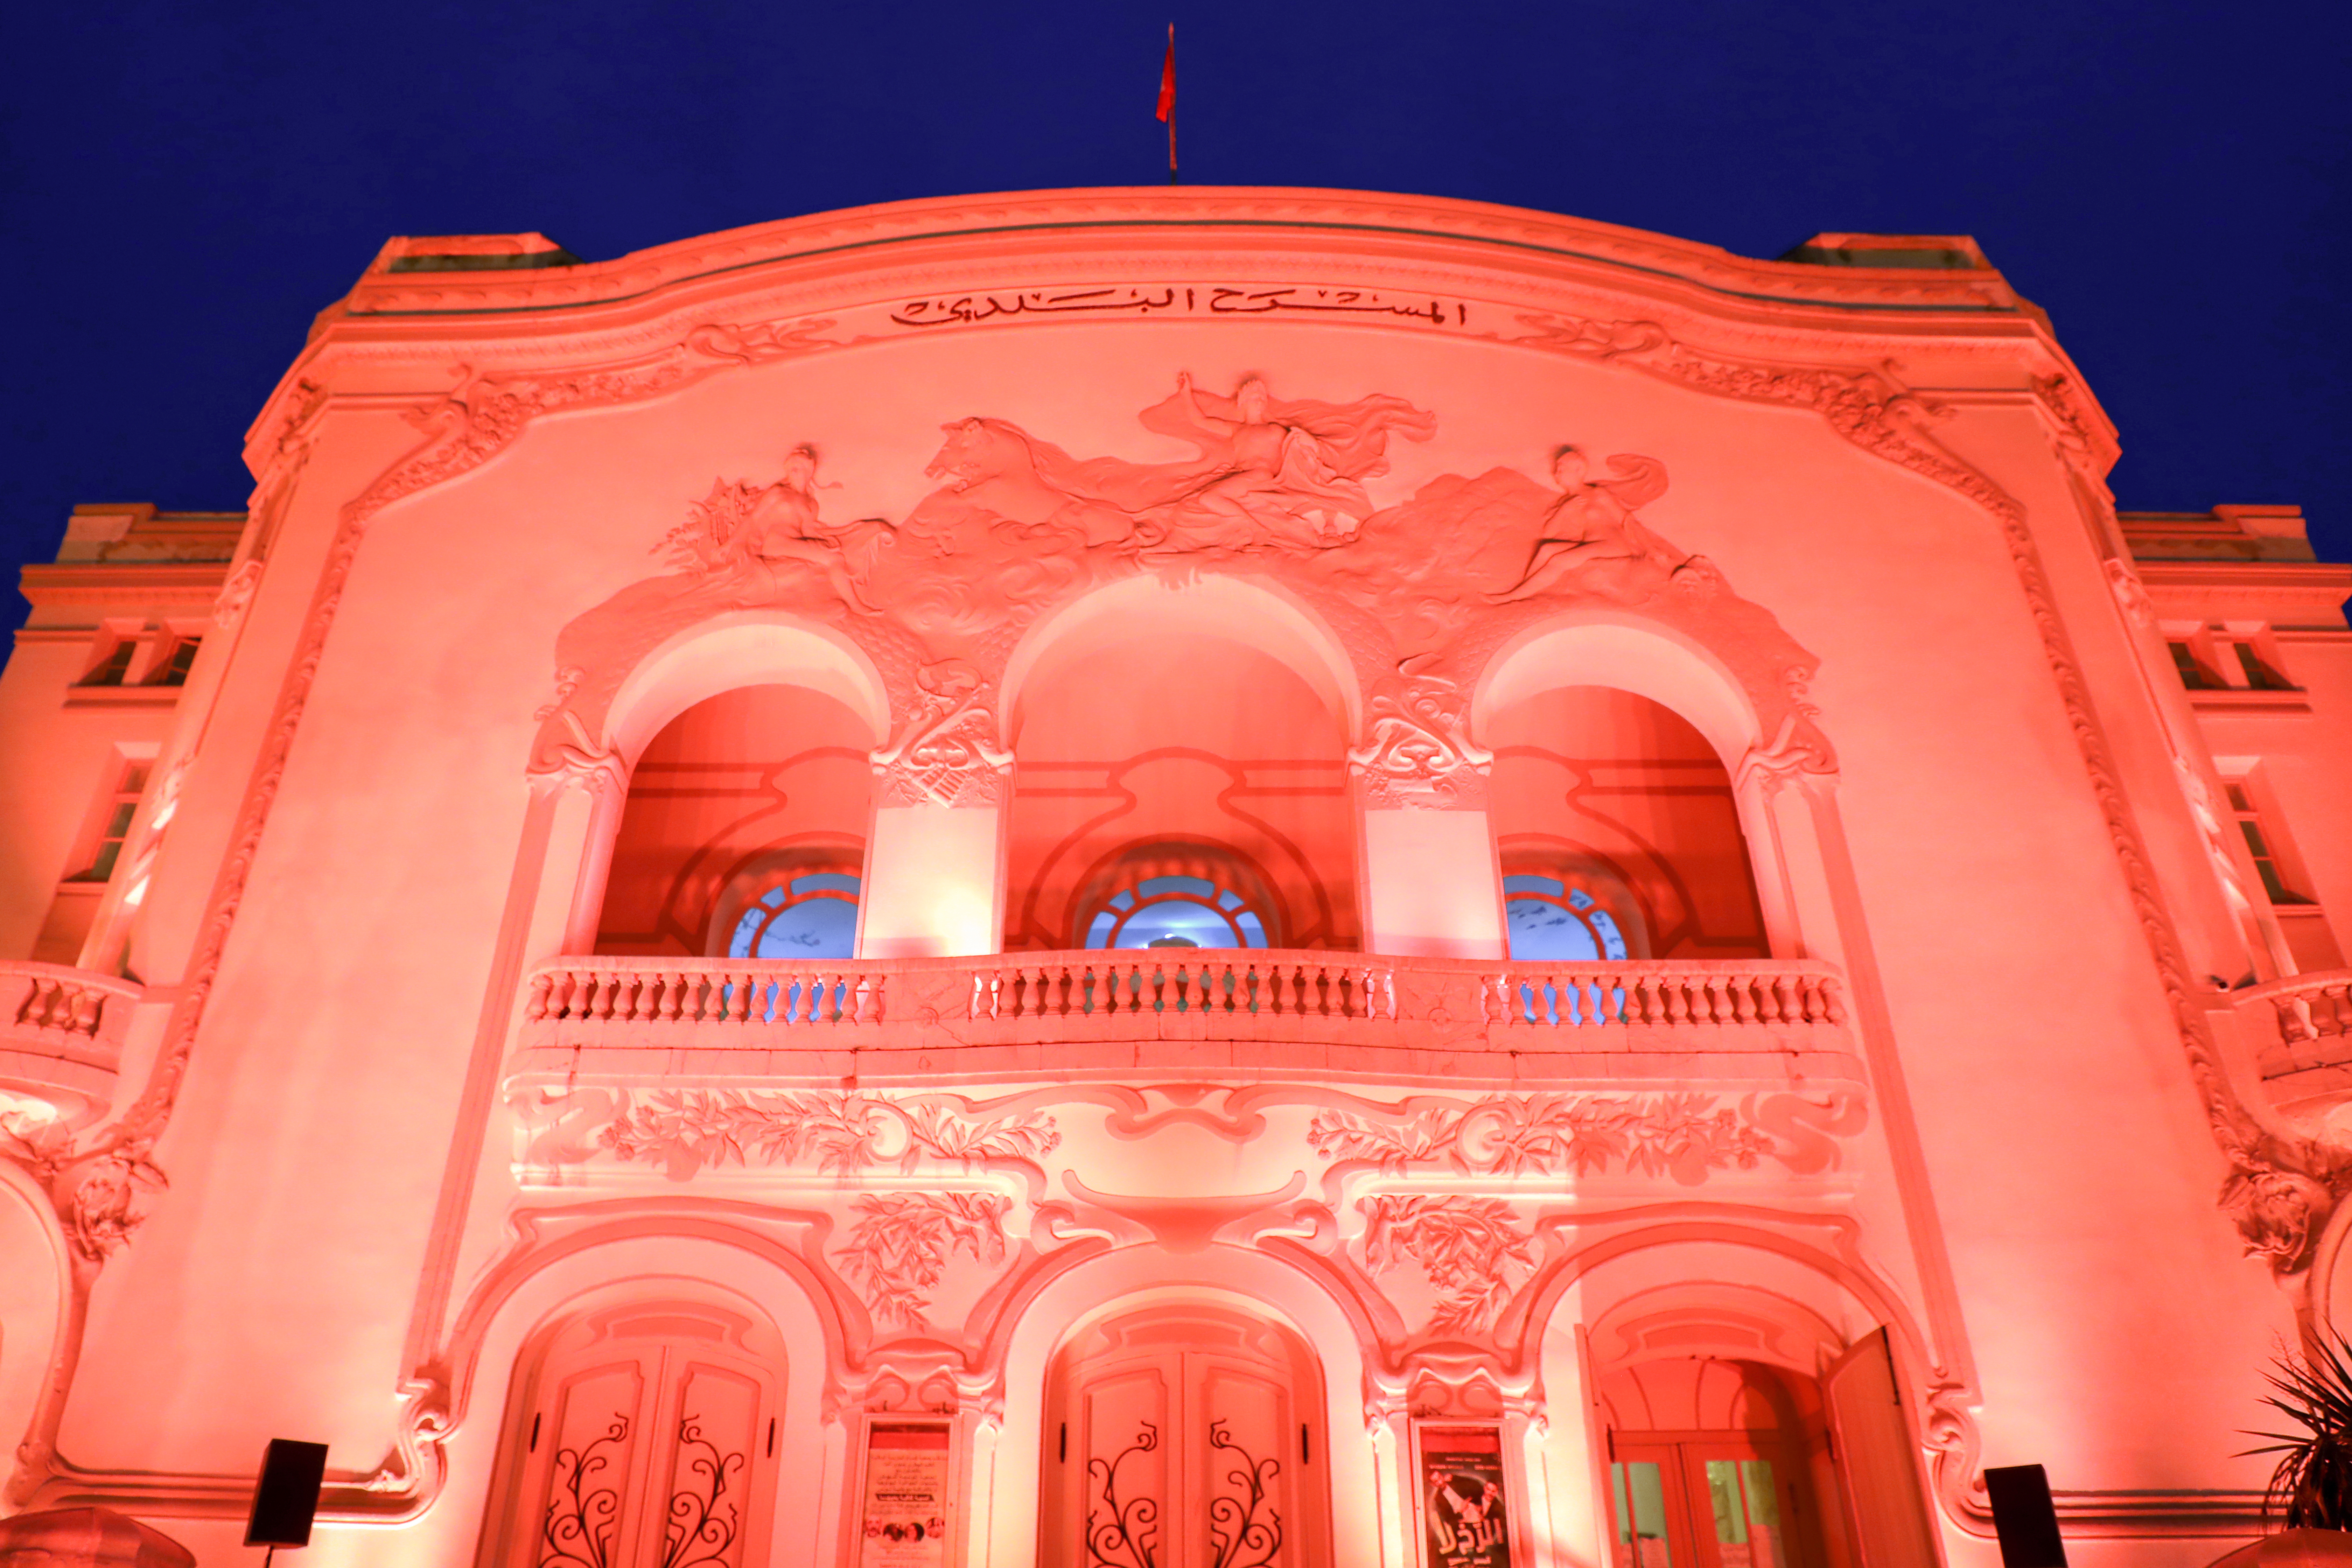 16 jours d'activisme : le théâtre municipal de Tunis illuminé en couleur orange